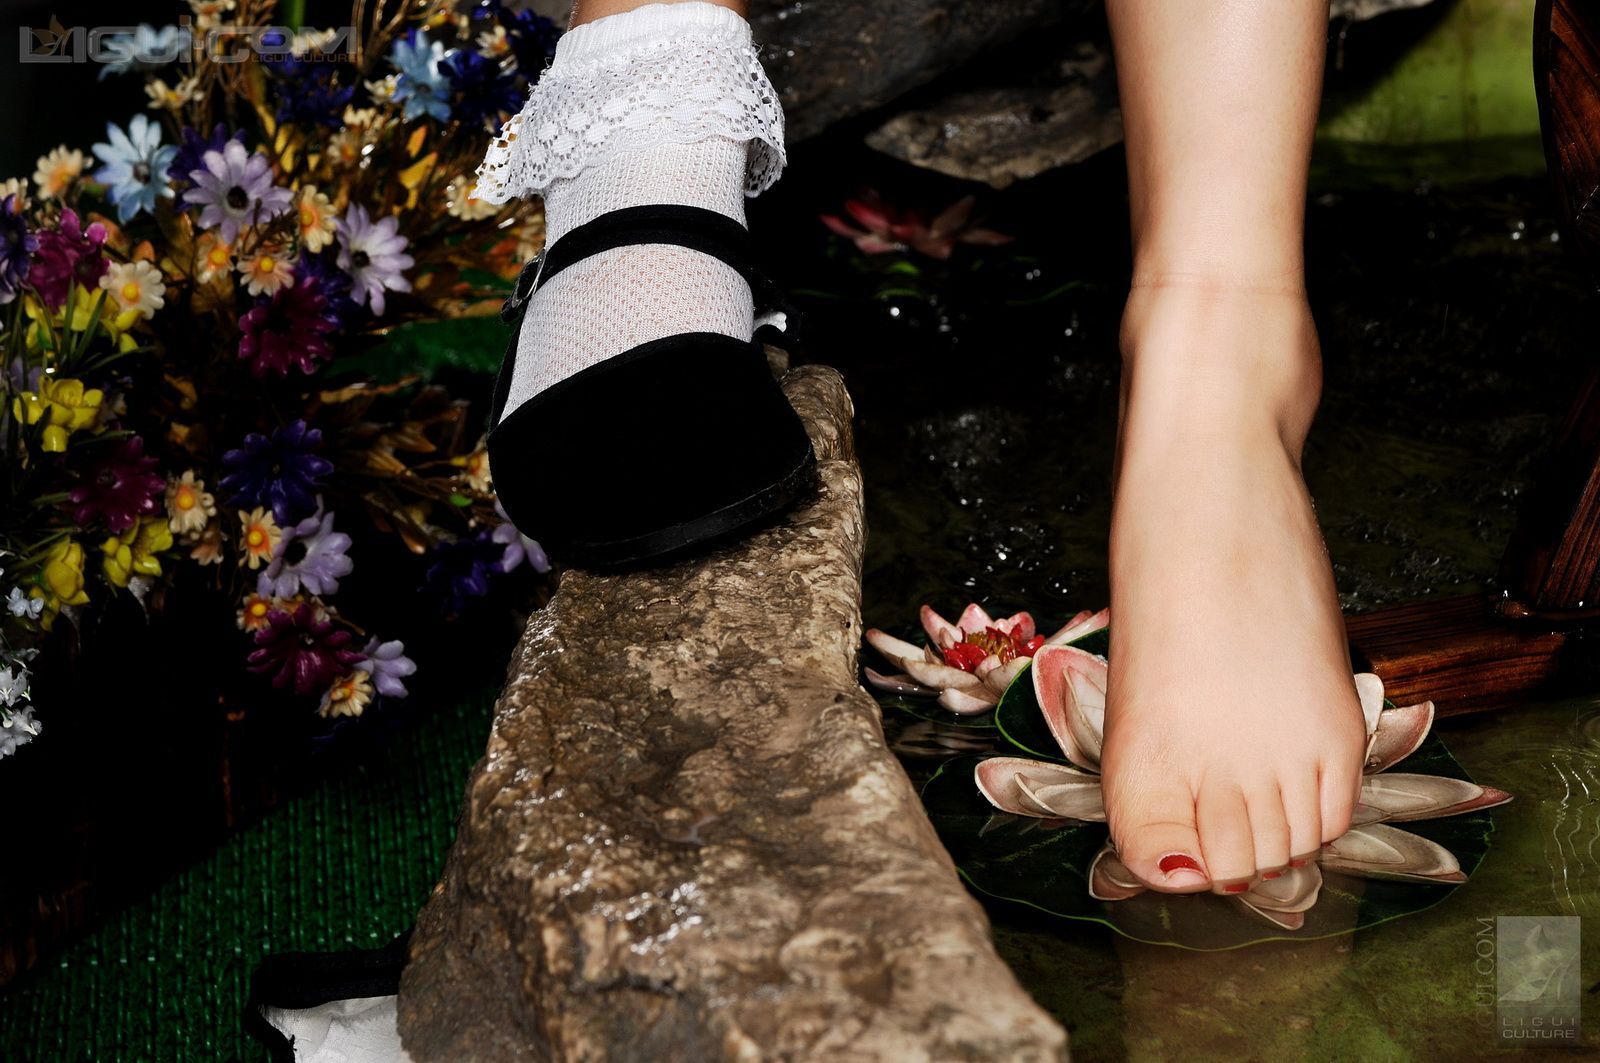 [ligui] beautiful and beautiful silk stockings, exotic scenery, beautiful foot